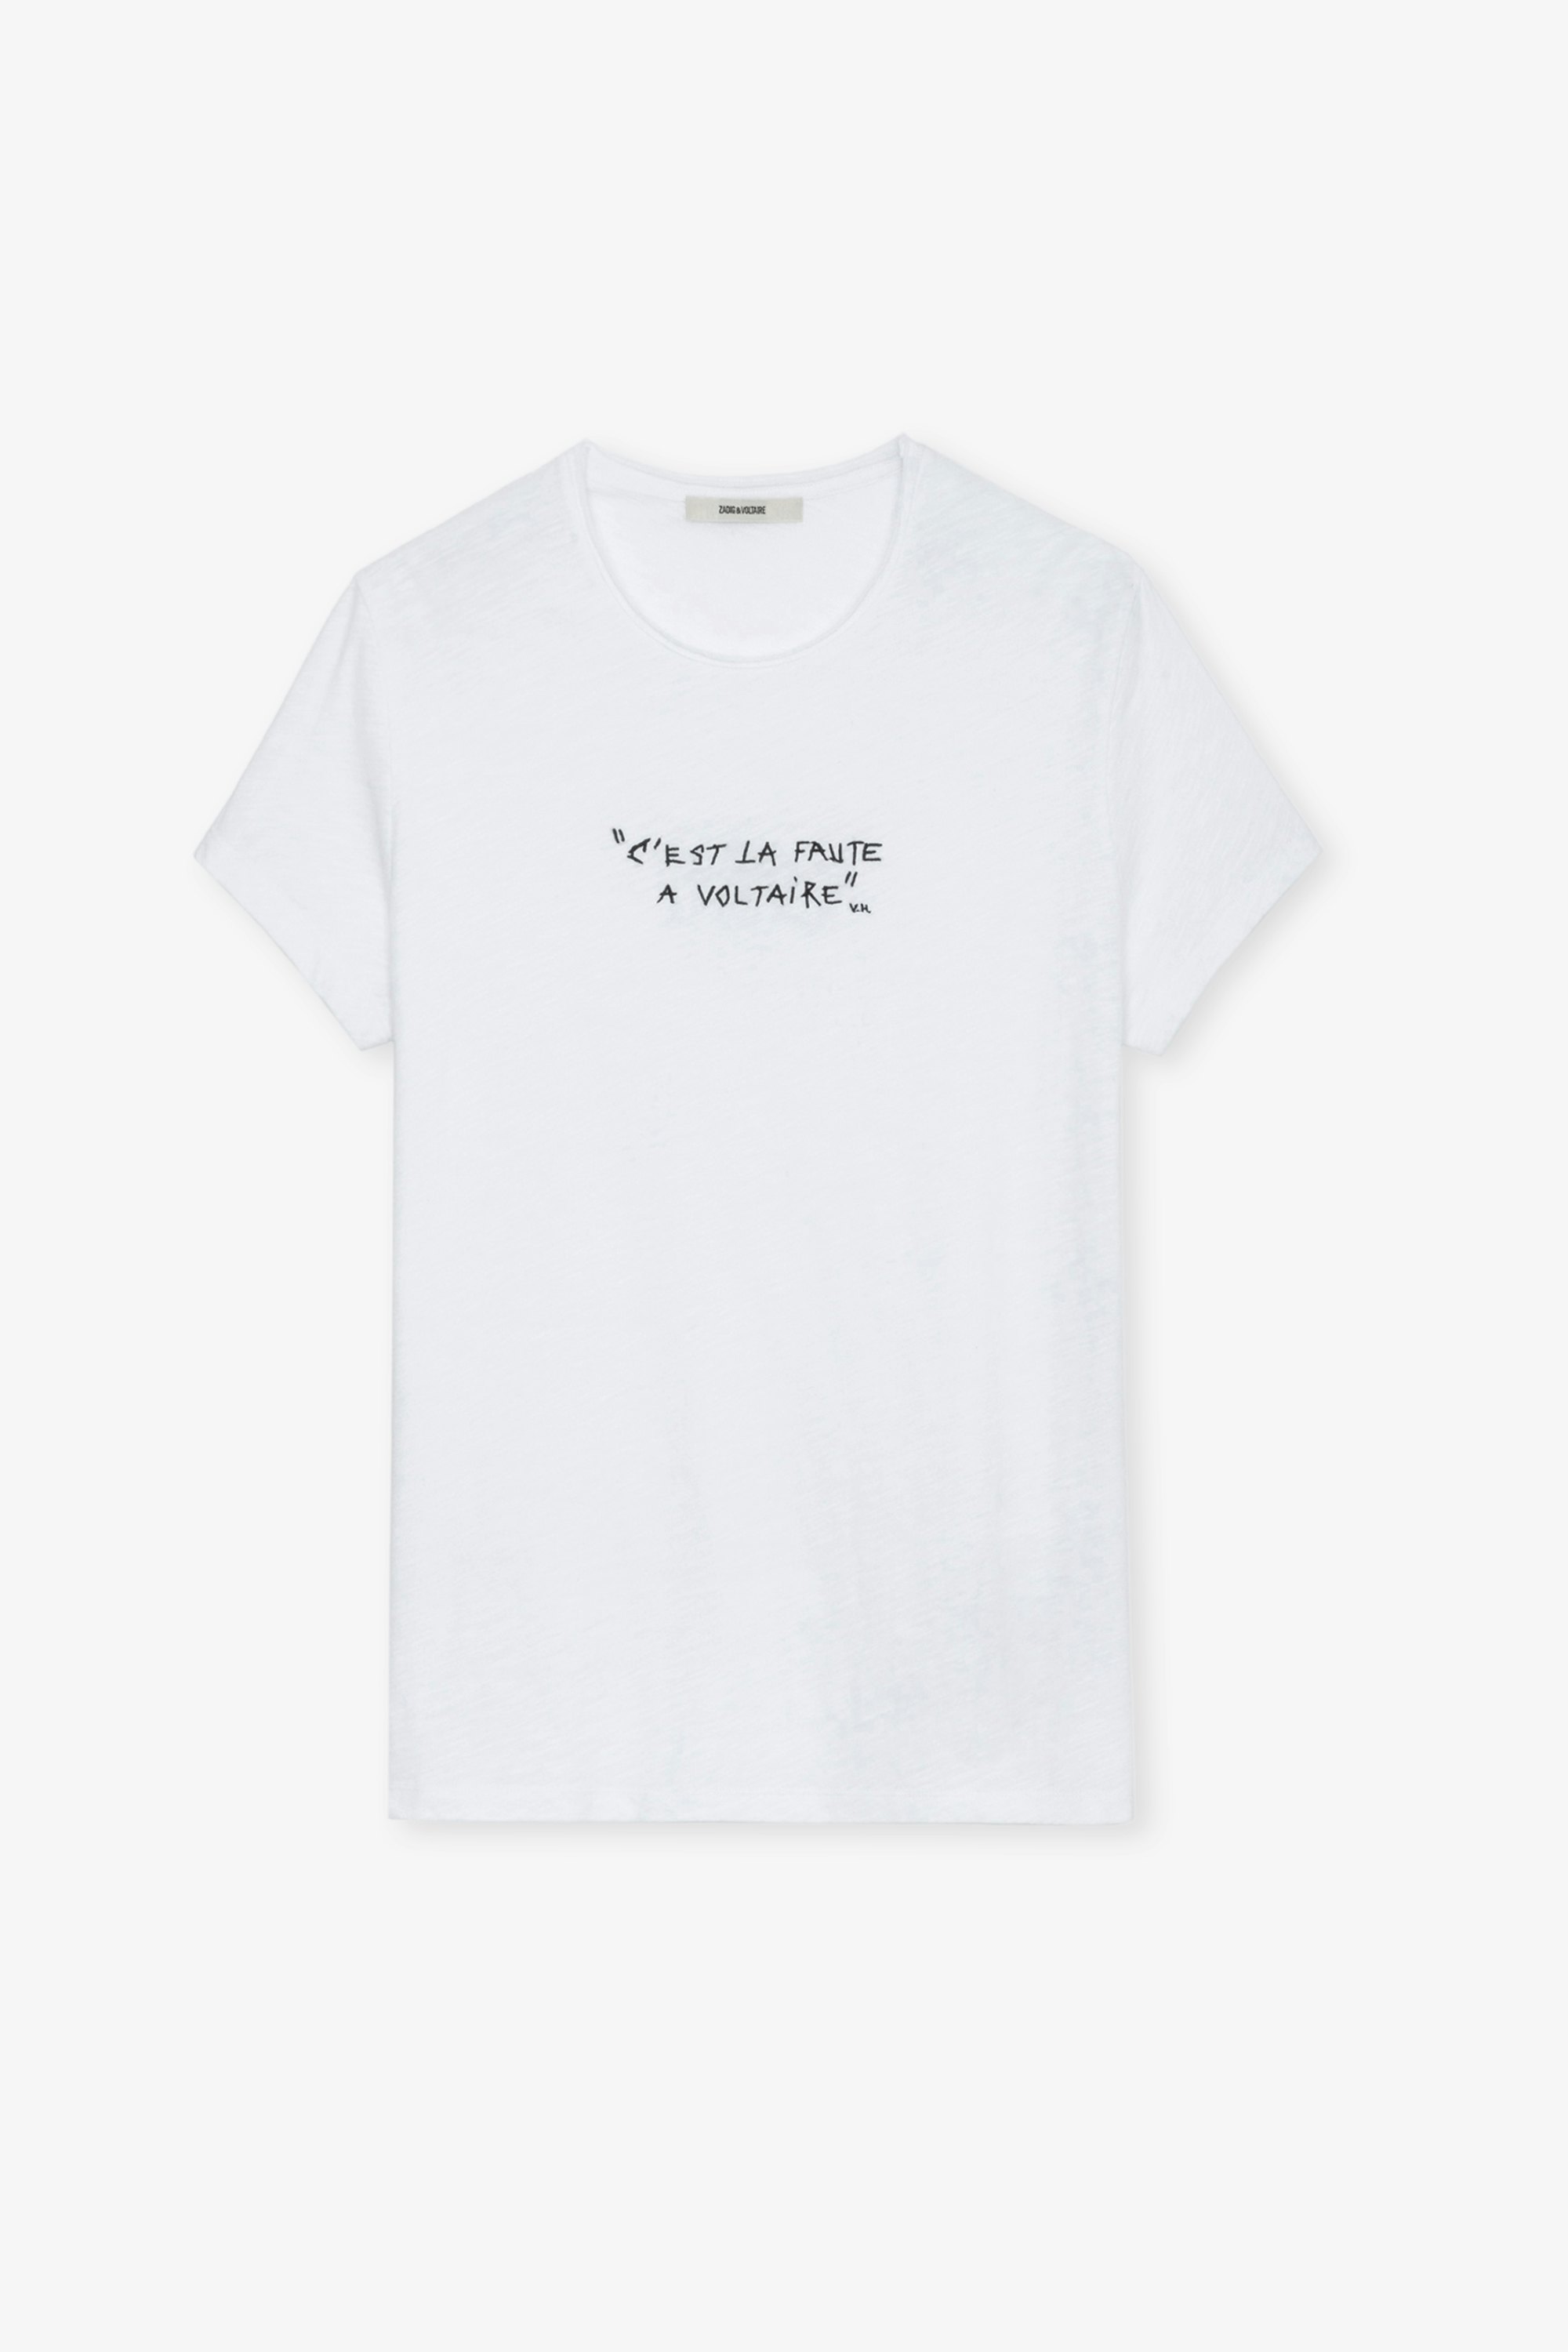 Toby Slub T-shirt - Men’s white slub cotton T-shirt with the slogan “C’est la faute à Voltaire”.